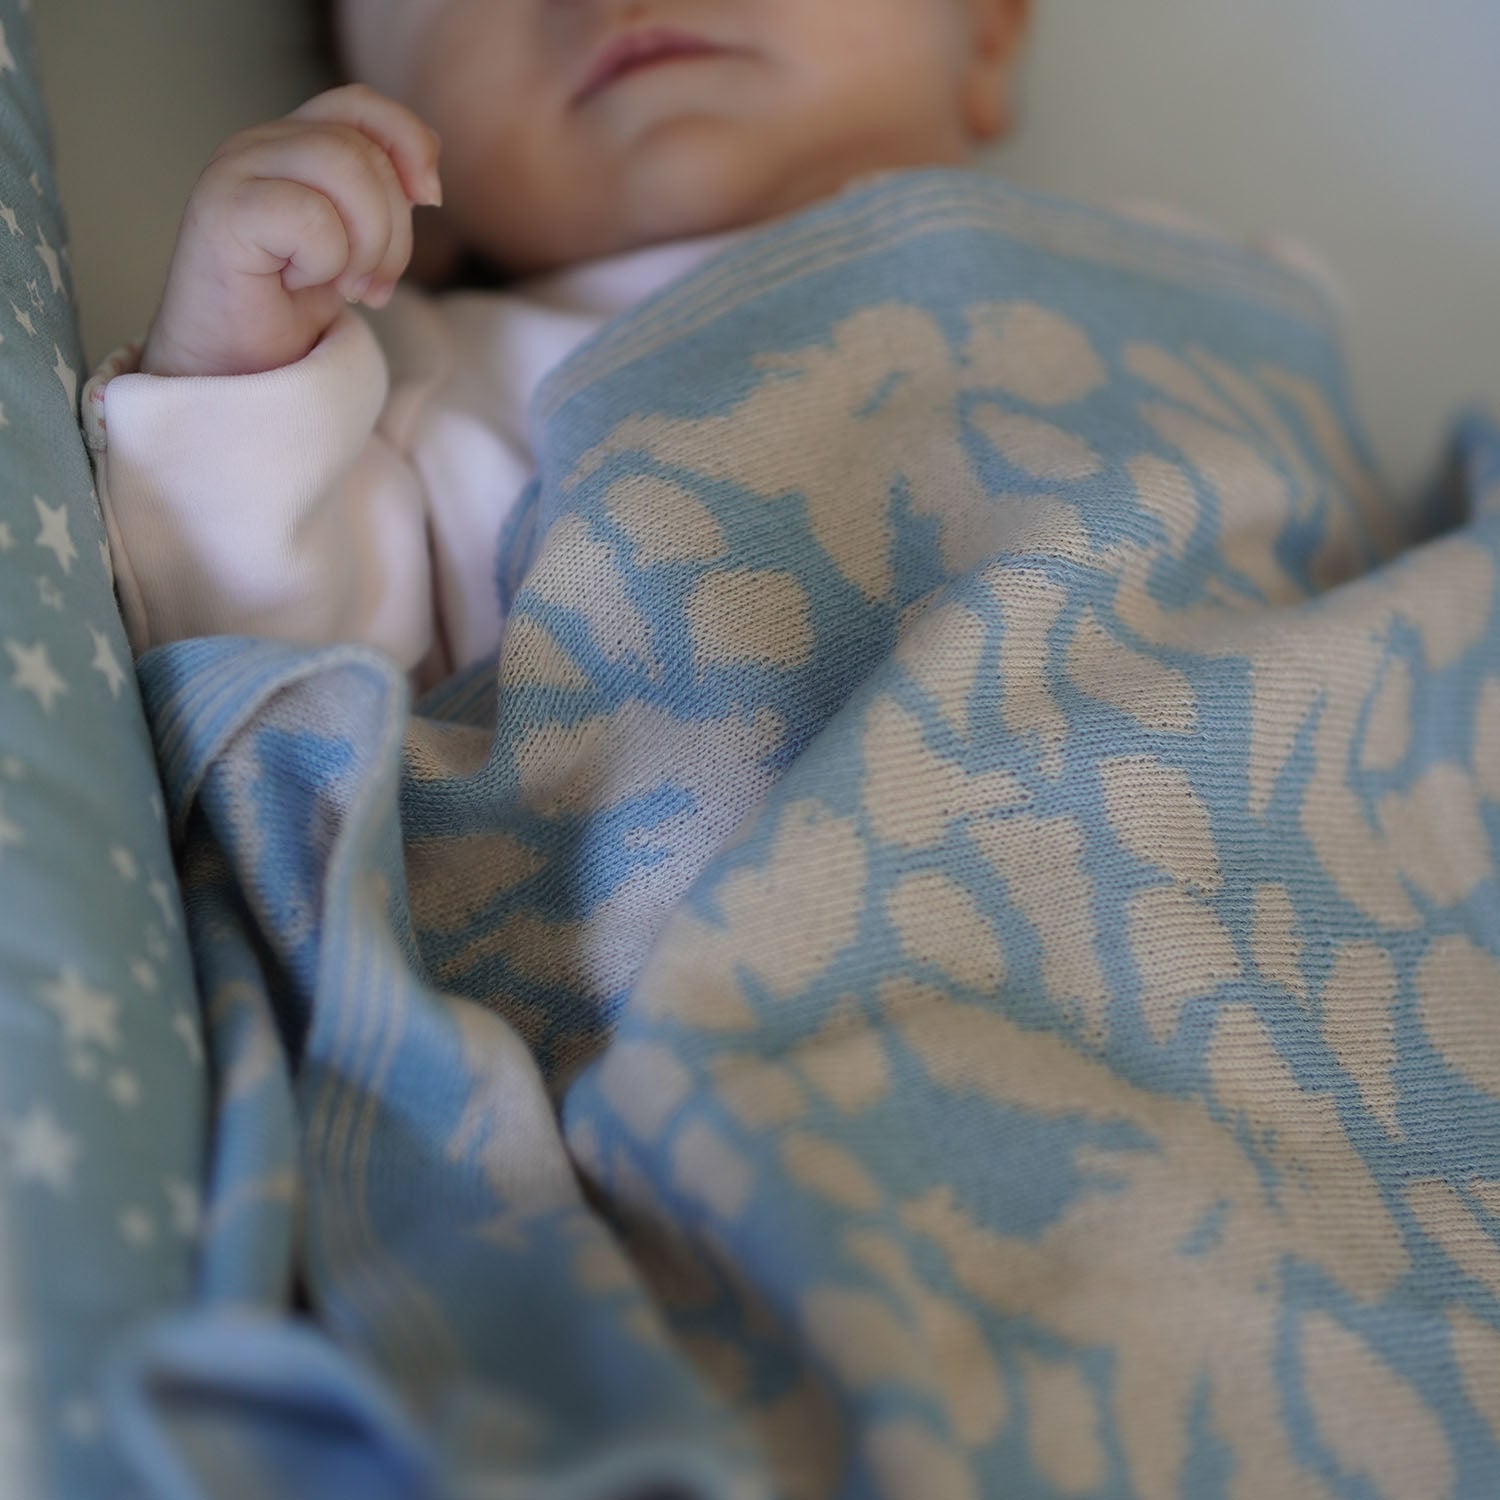 Personalisierte Babydecke 'IRIS' gestrickt aus Baumwolle mit Kaschmir. Das besondere Geschenk für Babys zur Geburt. Individuell angefertigt mit Wunschname des Kindes.